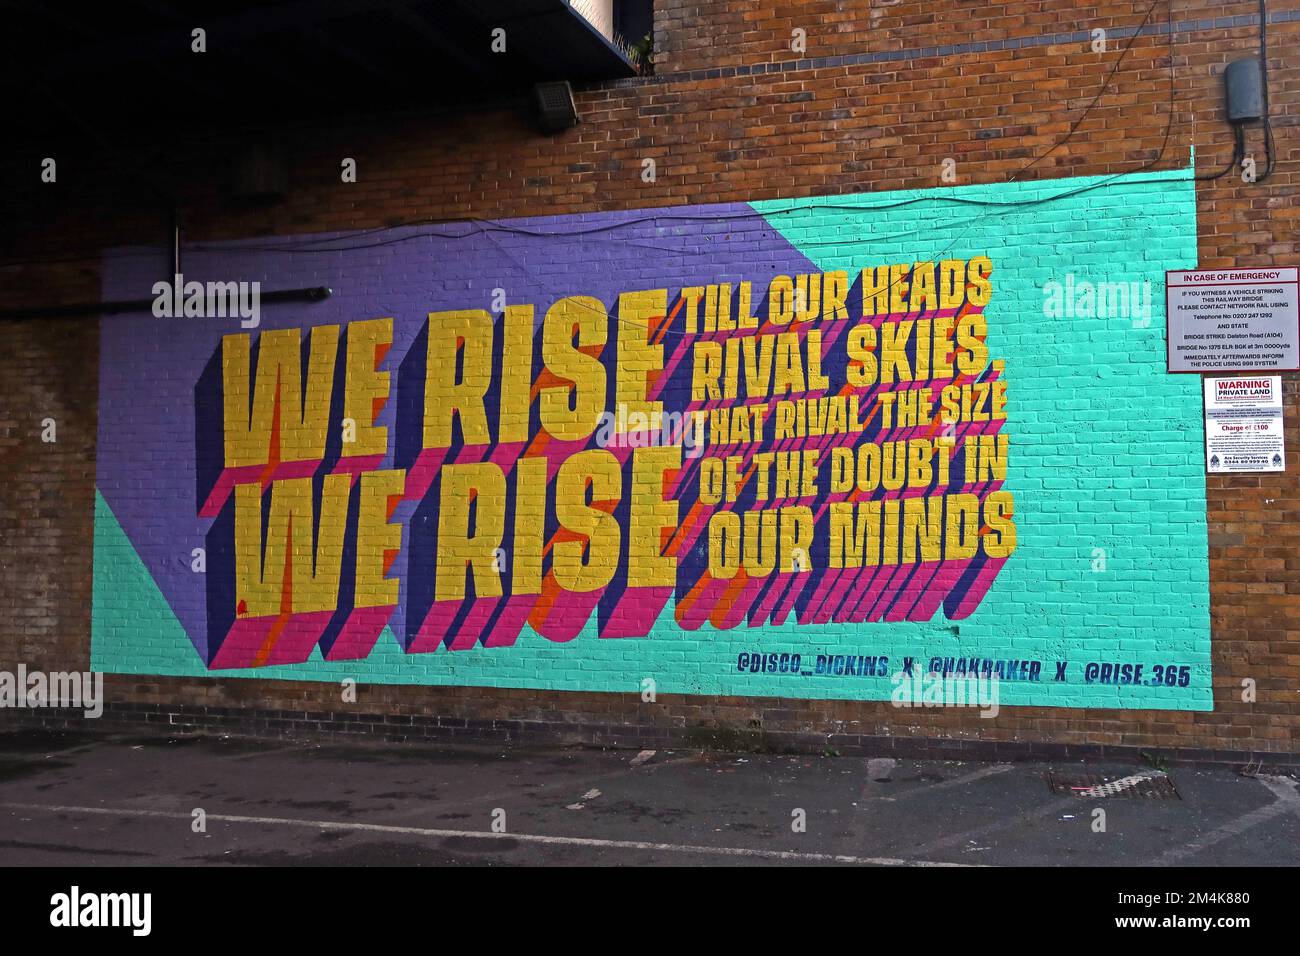 Rise 365 Hackney - We Rise, fresque à Hackney Downs, Londres, Royaume-Uni - jusqu'à ce que nos têtes rivalisent avec le ciel, qui rivalise avec la taille du doute dans nos esprits Banque D'Images